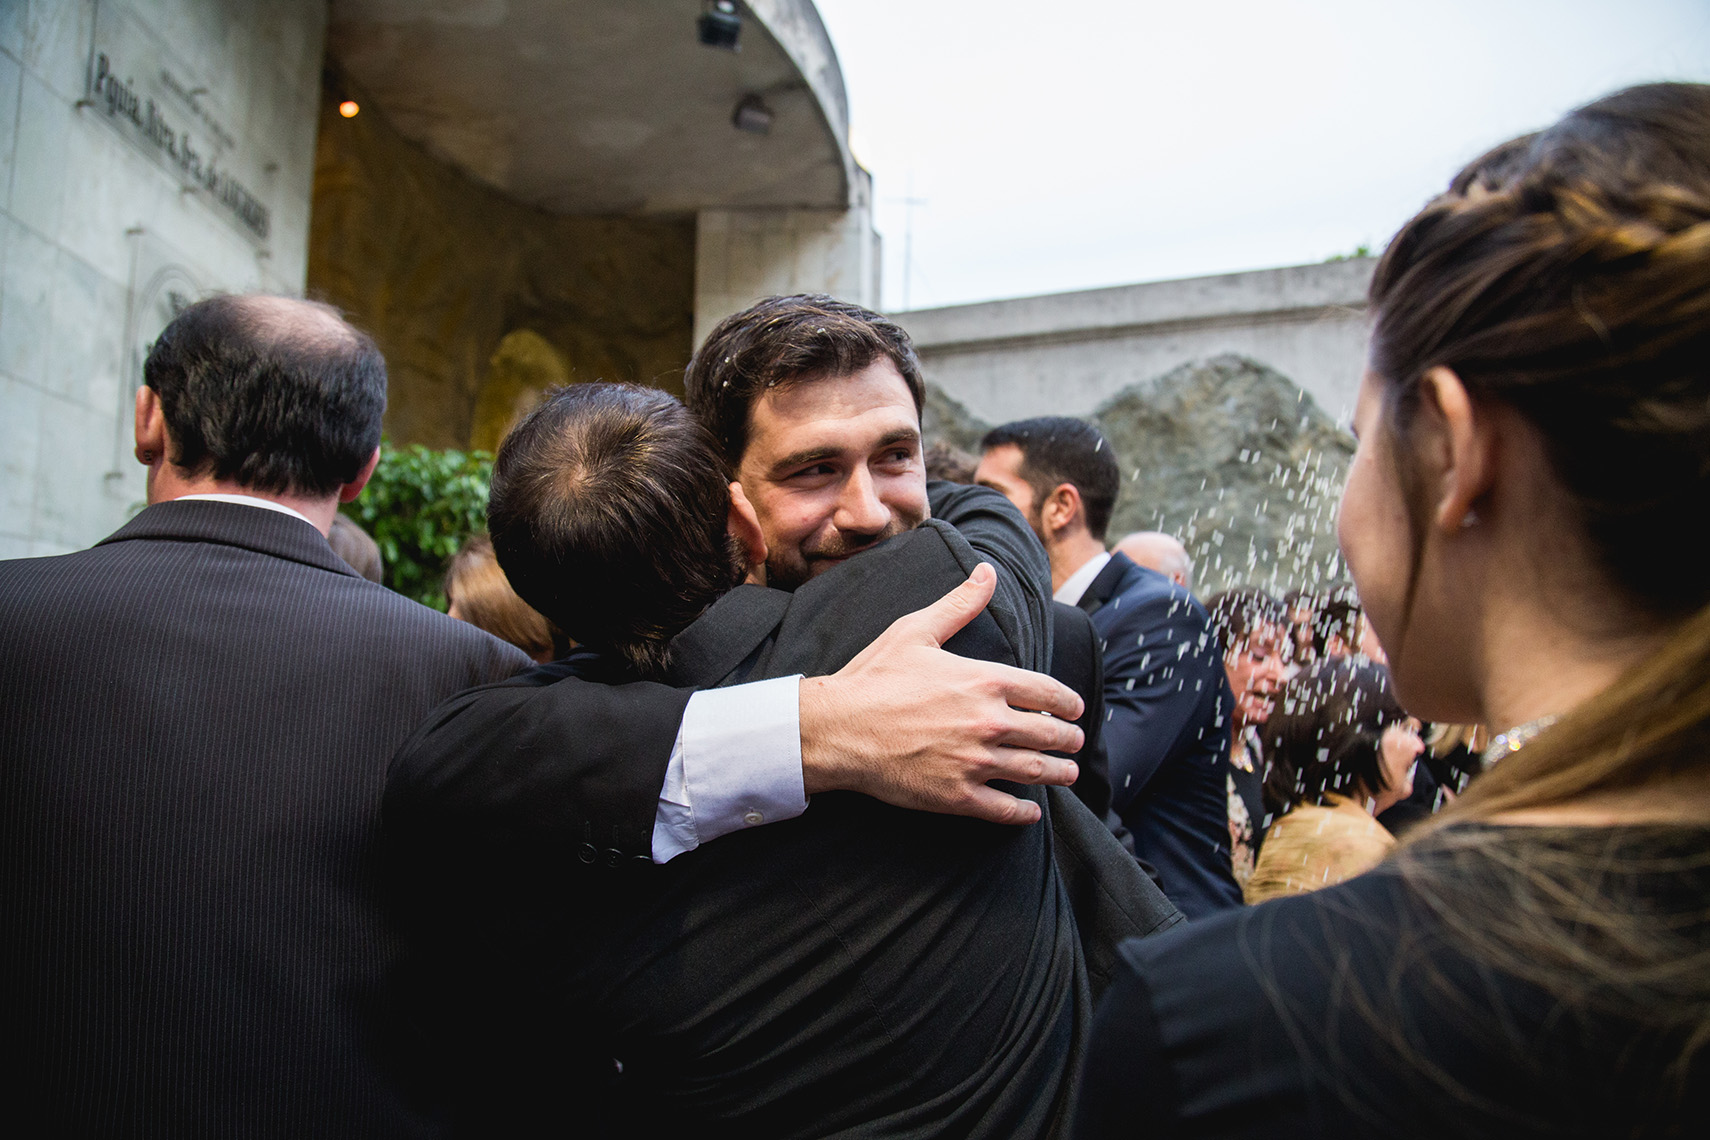 Fotos de la boda de Nay y Nico en Rosario realizadas por Bucle Fotografias Flor Bosio y Caro Clerici